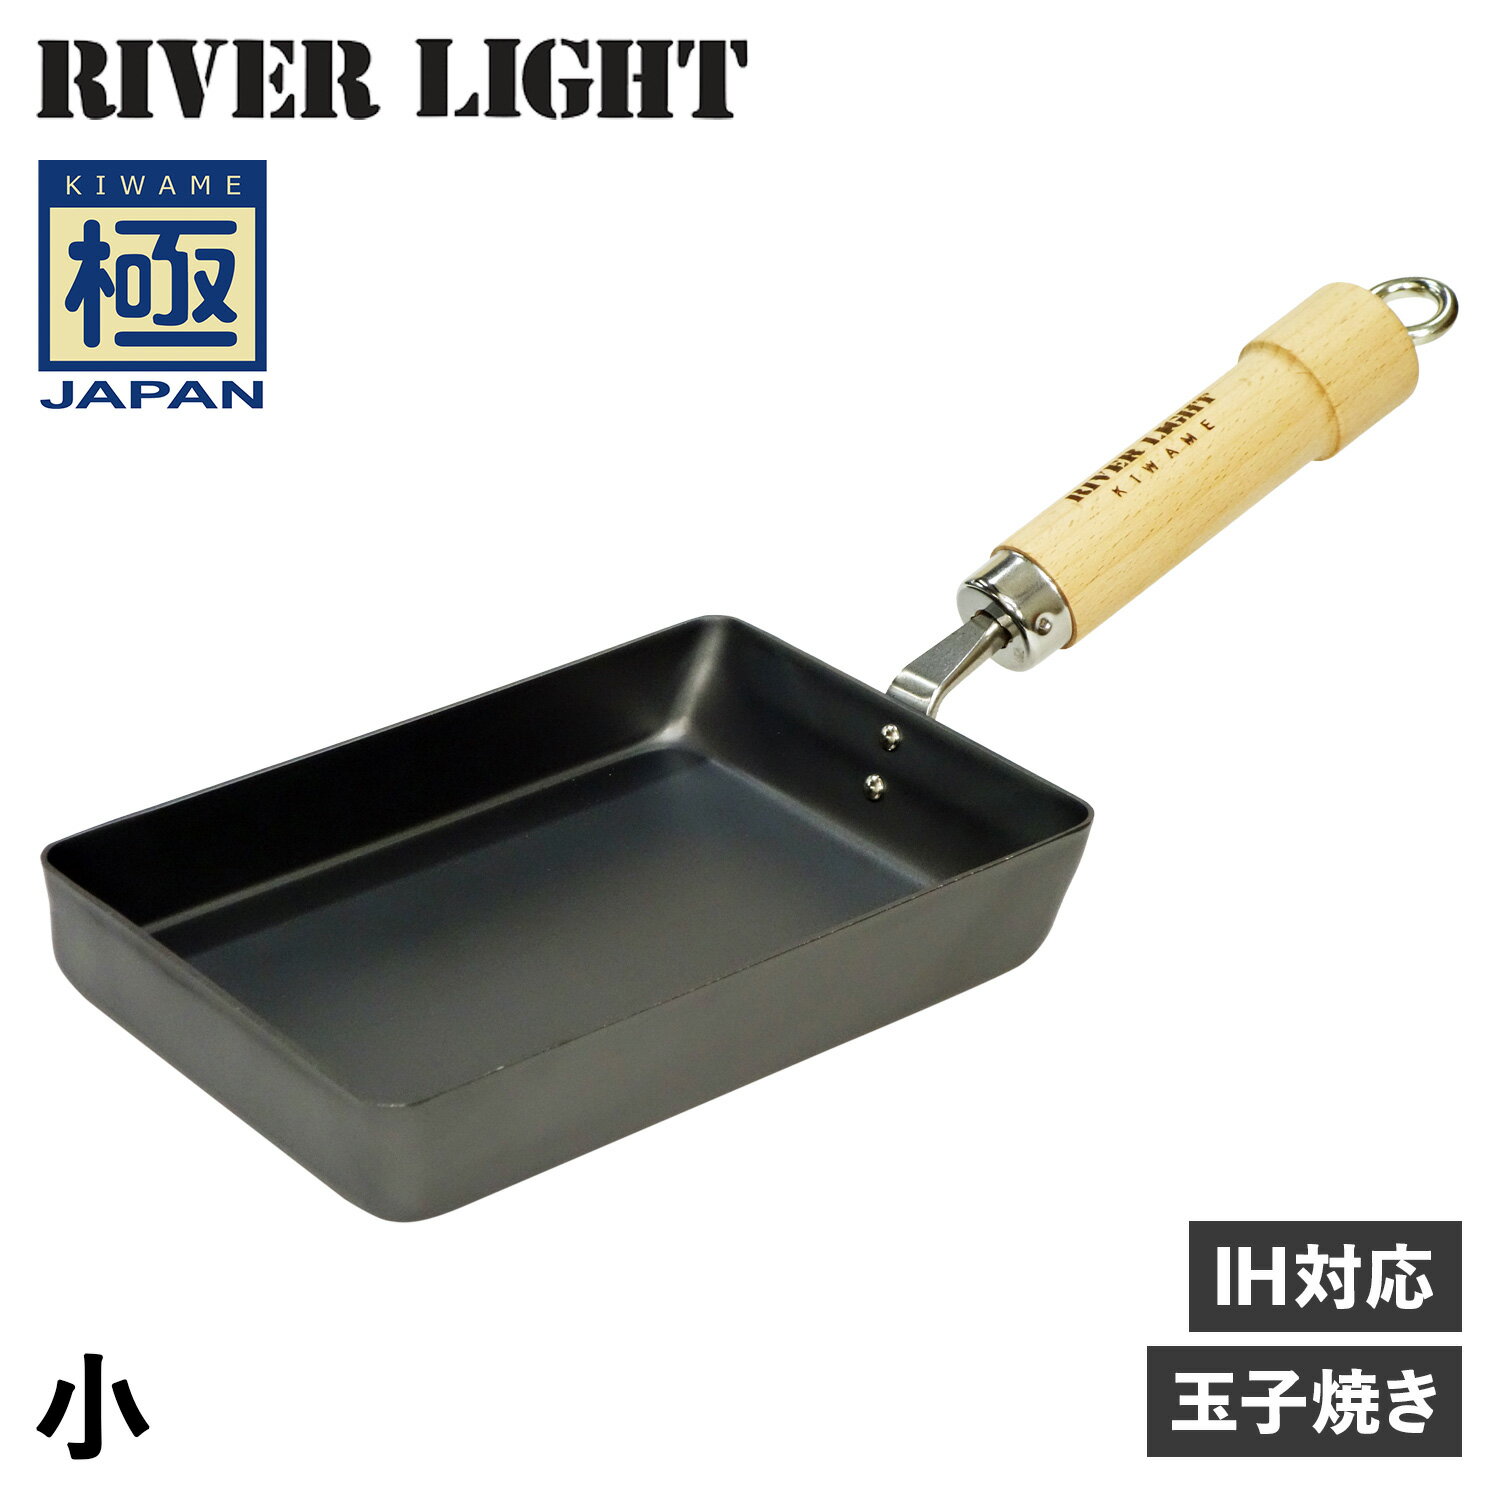 RIVER LIGHT リバーライト 極 卵焼き器 フライパン 小 IH ガス対応 小さい 鉄 極JAPAN J1613 アウトドア